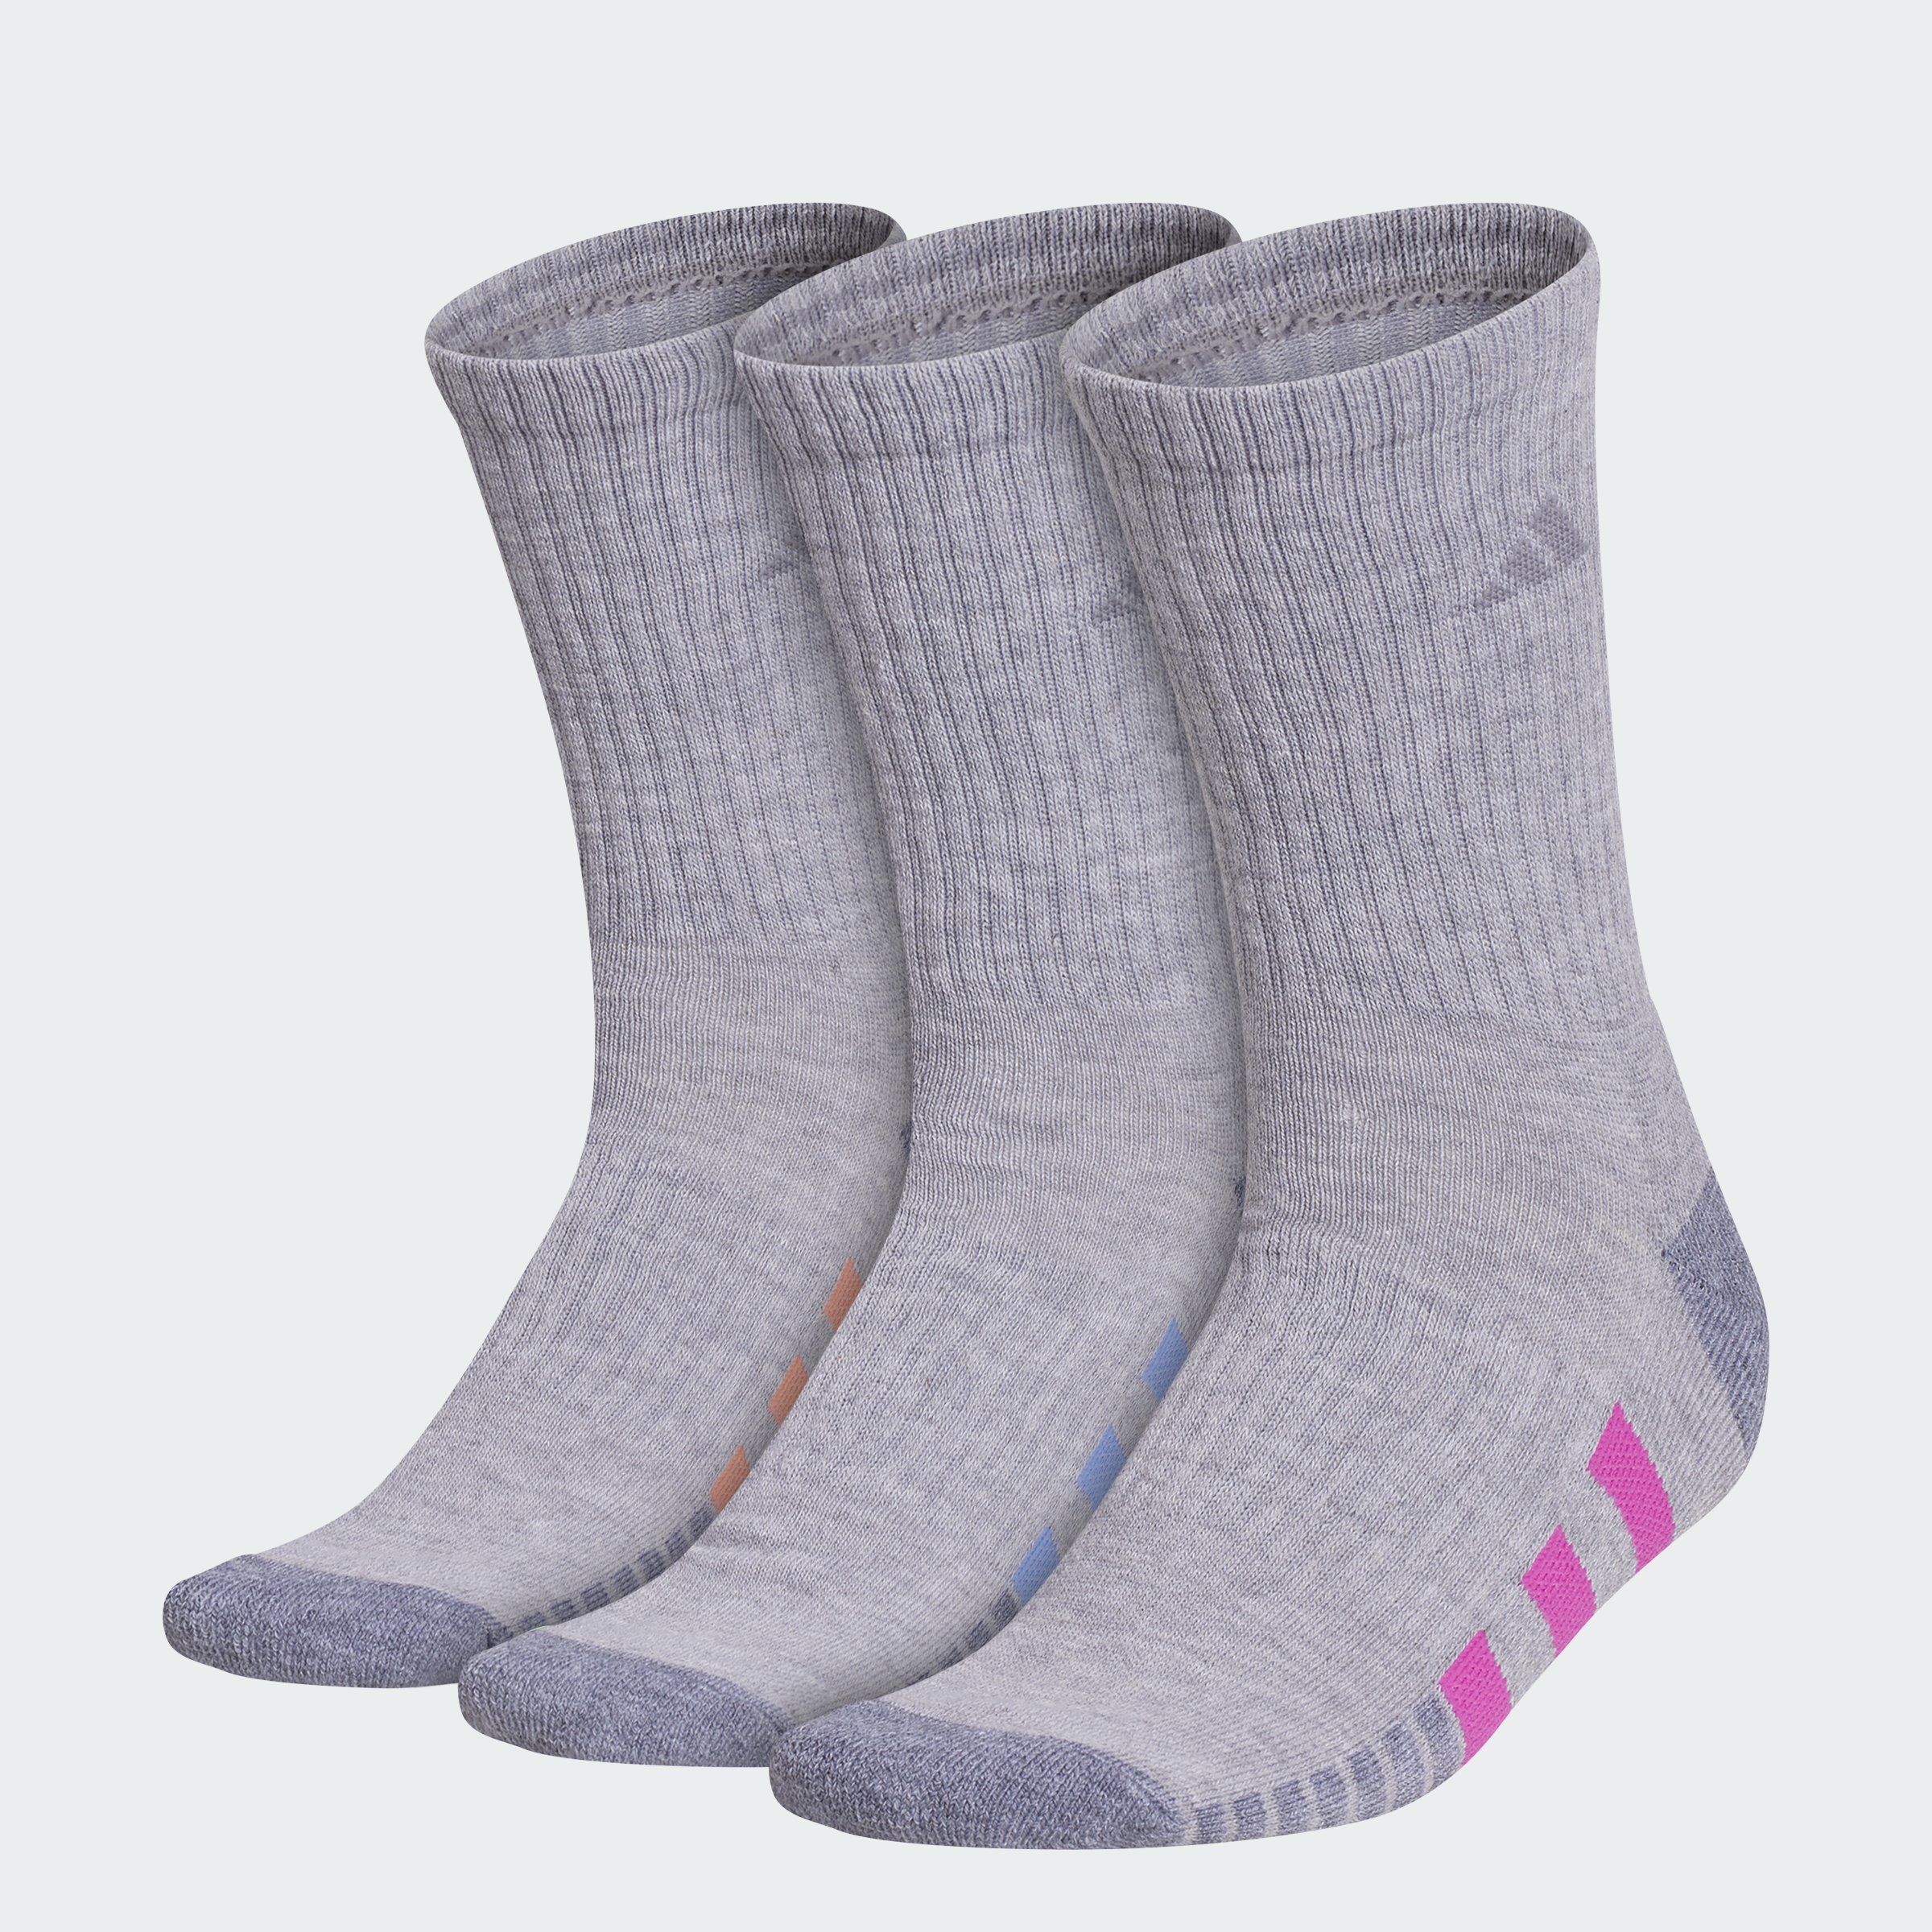 Cushioned Crew Socks 3 Pairs | eBay